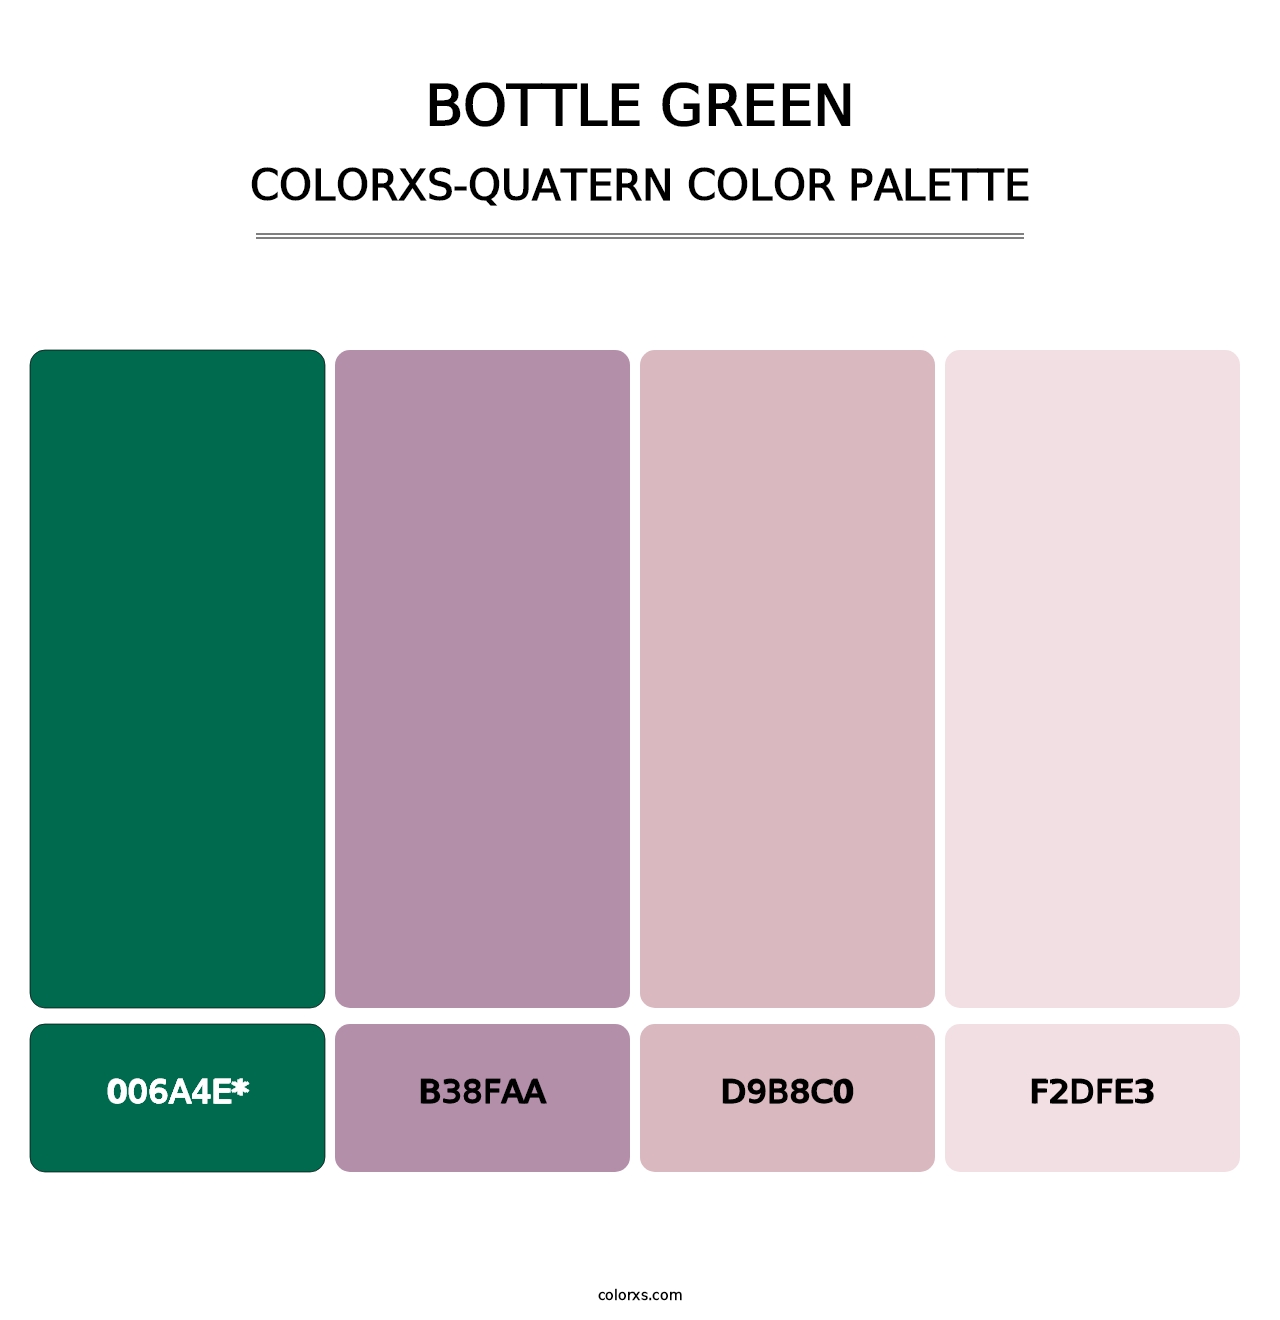 Bottle Green - Colorxs Quatern Palette